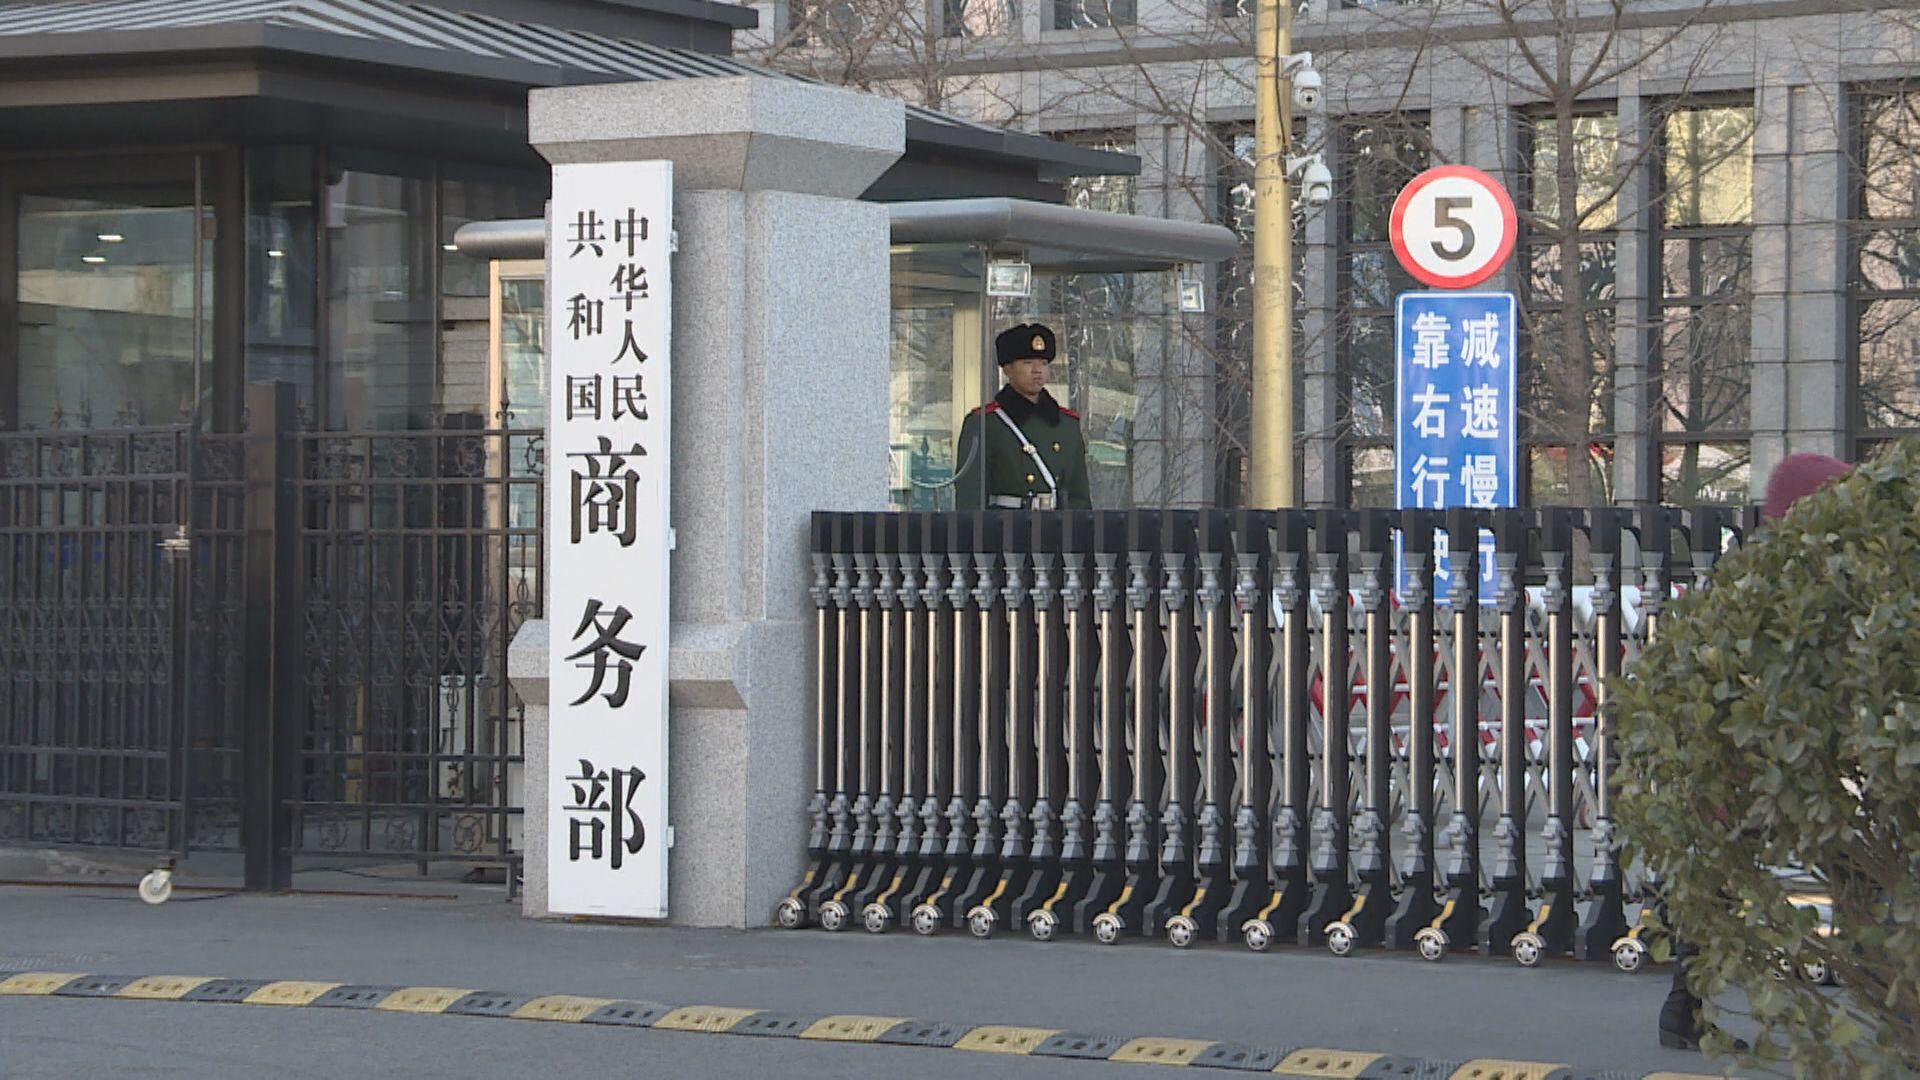 【日企圓桌會議】王文濤:中國開放大門只會越開越大